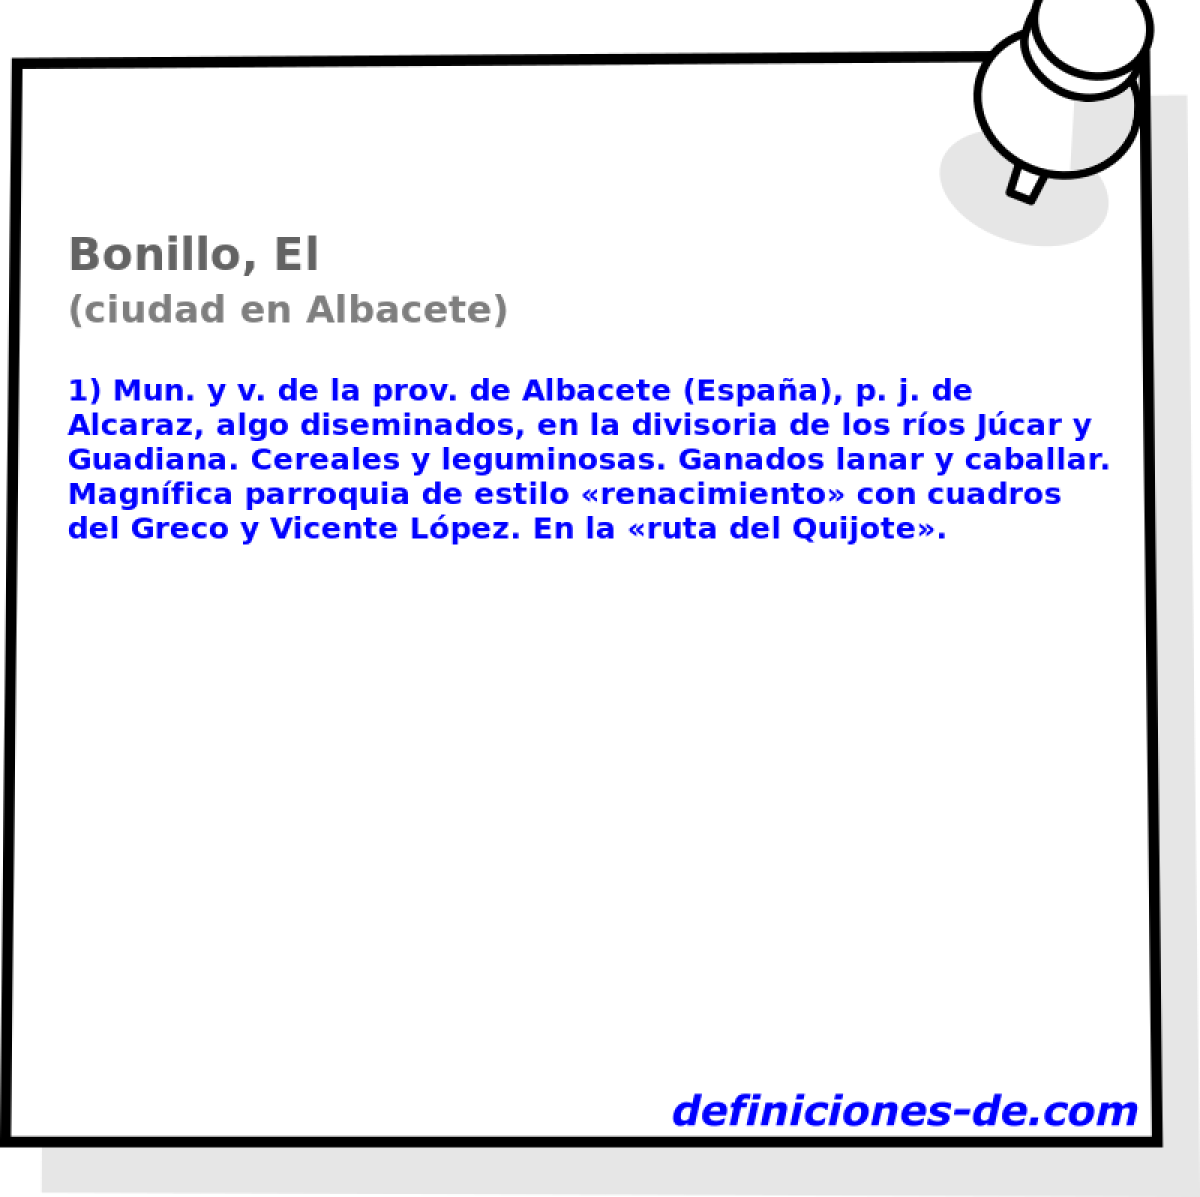 Bonillo, El (ciudad en Albacete)